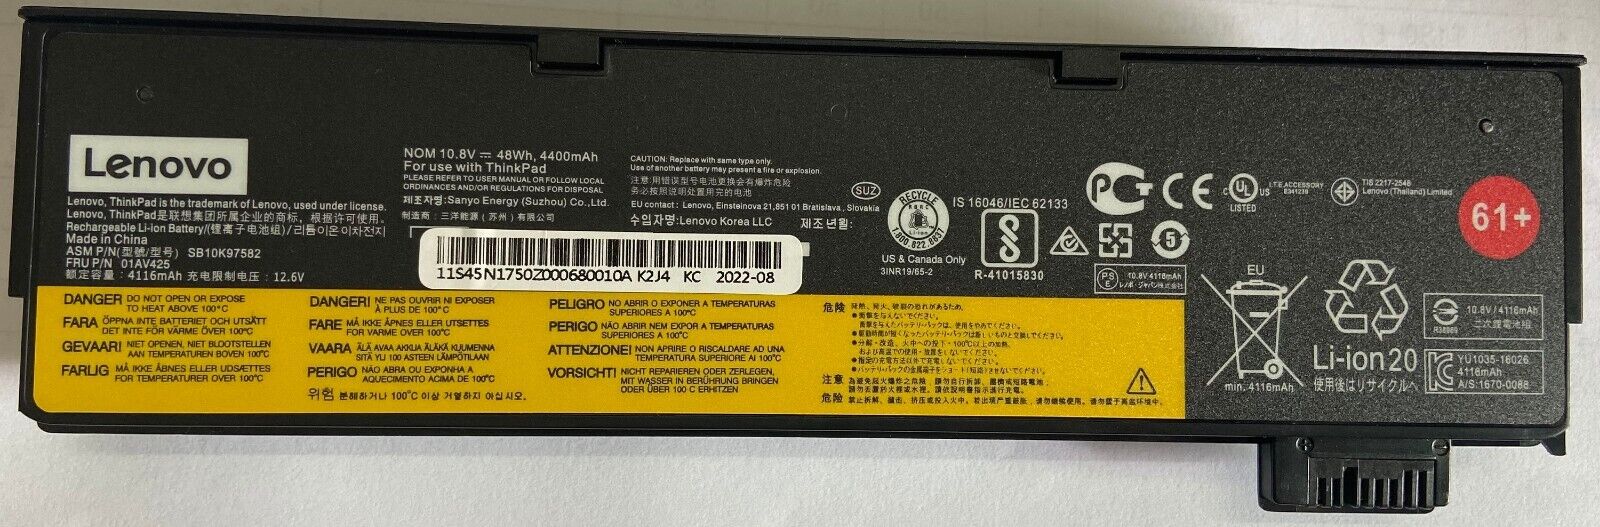 lenovo thinkpad t470 genuine battery T580 P51s P52s 01AV425 01AV42  OEM 61+ 48WH